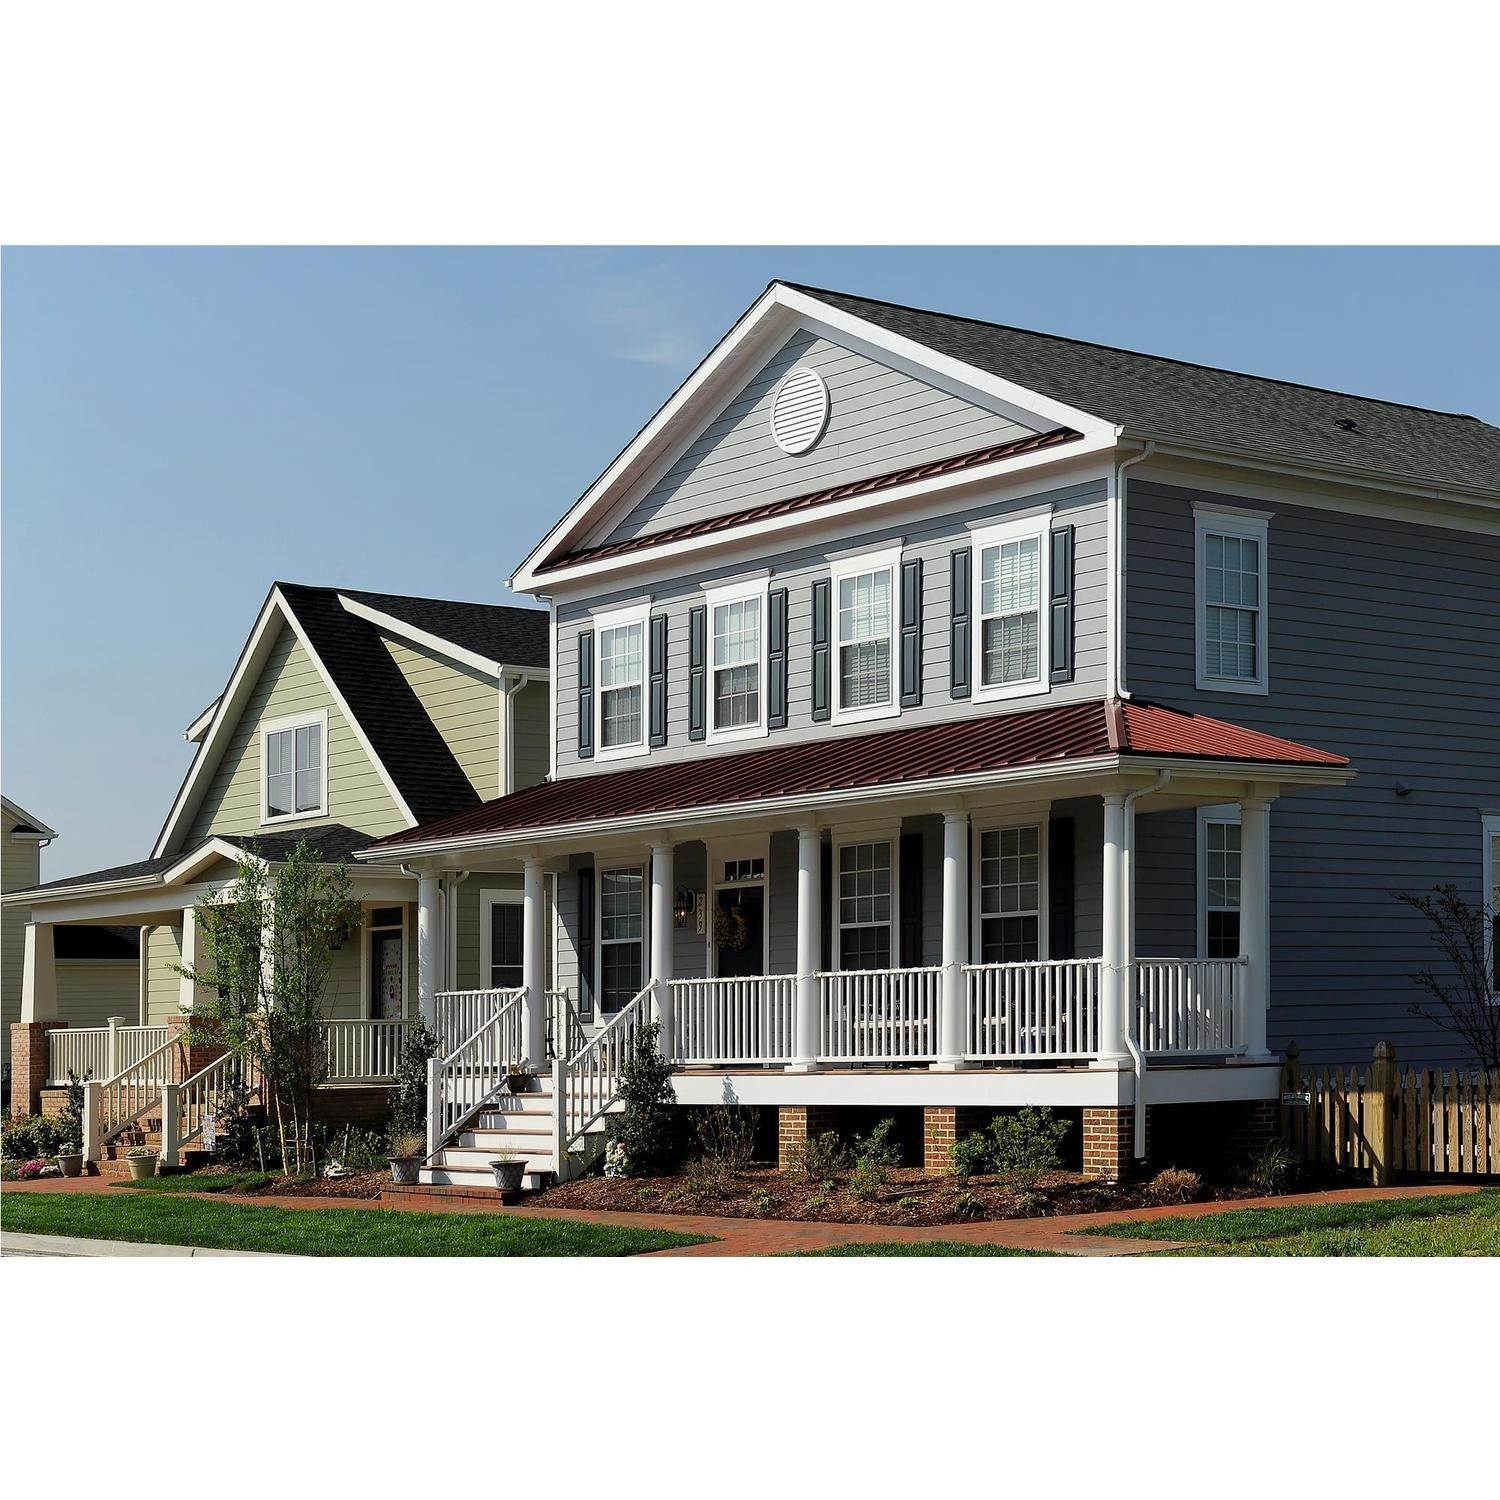 7. Covell Signature Homes edificio a 110 Channel Marker Way, Grasonville, MD 21638